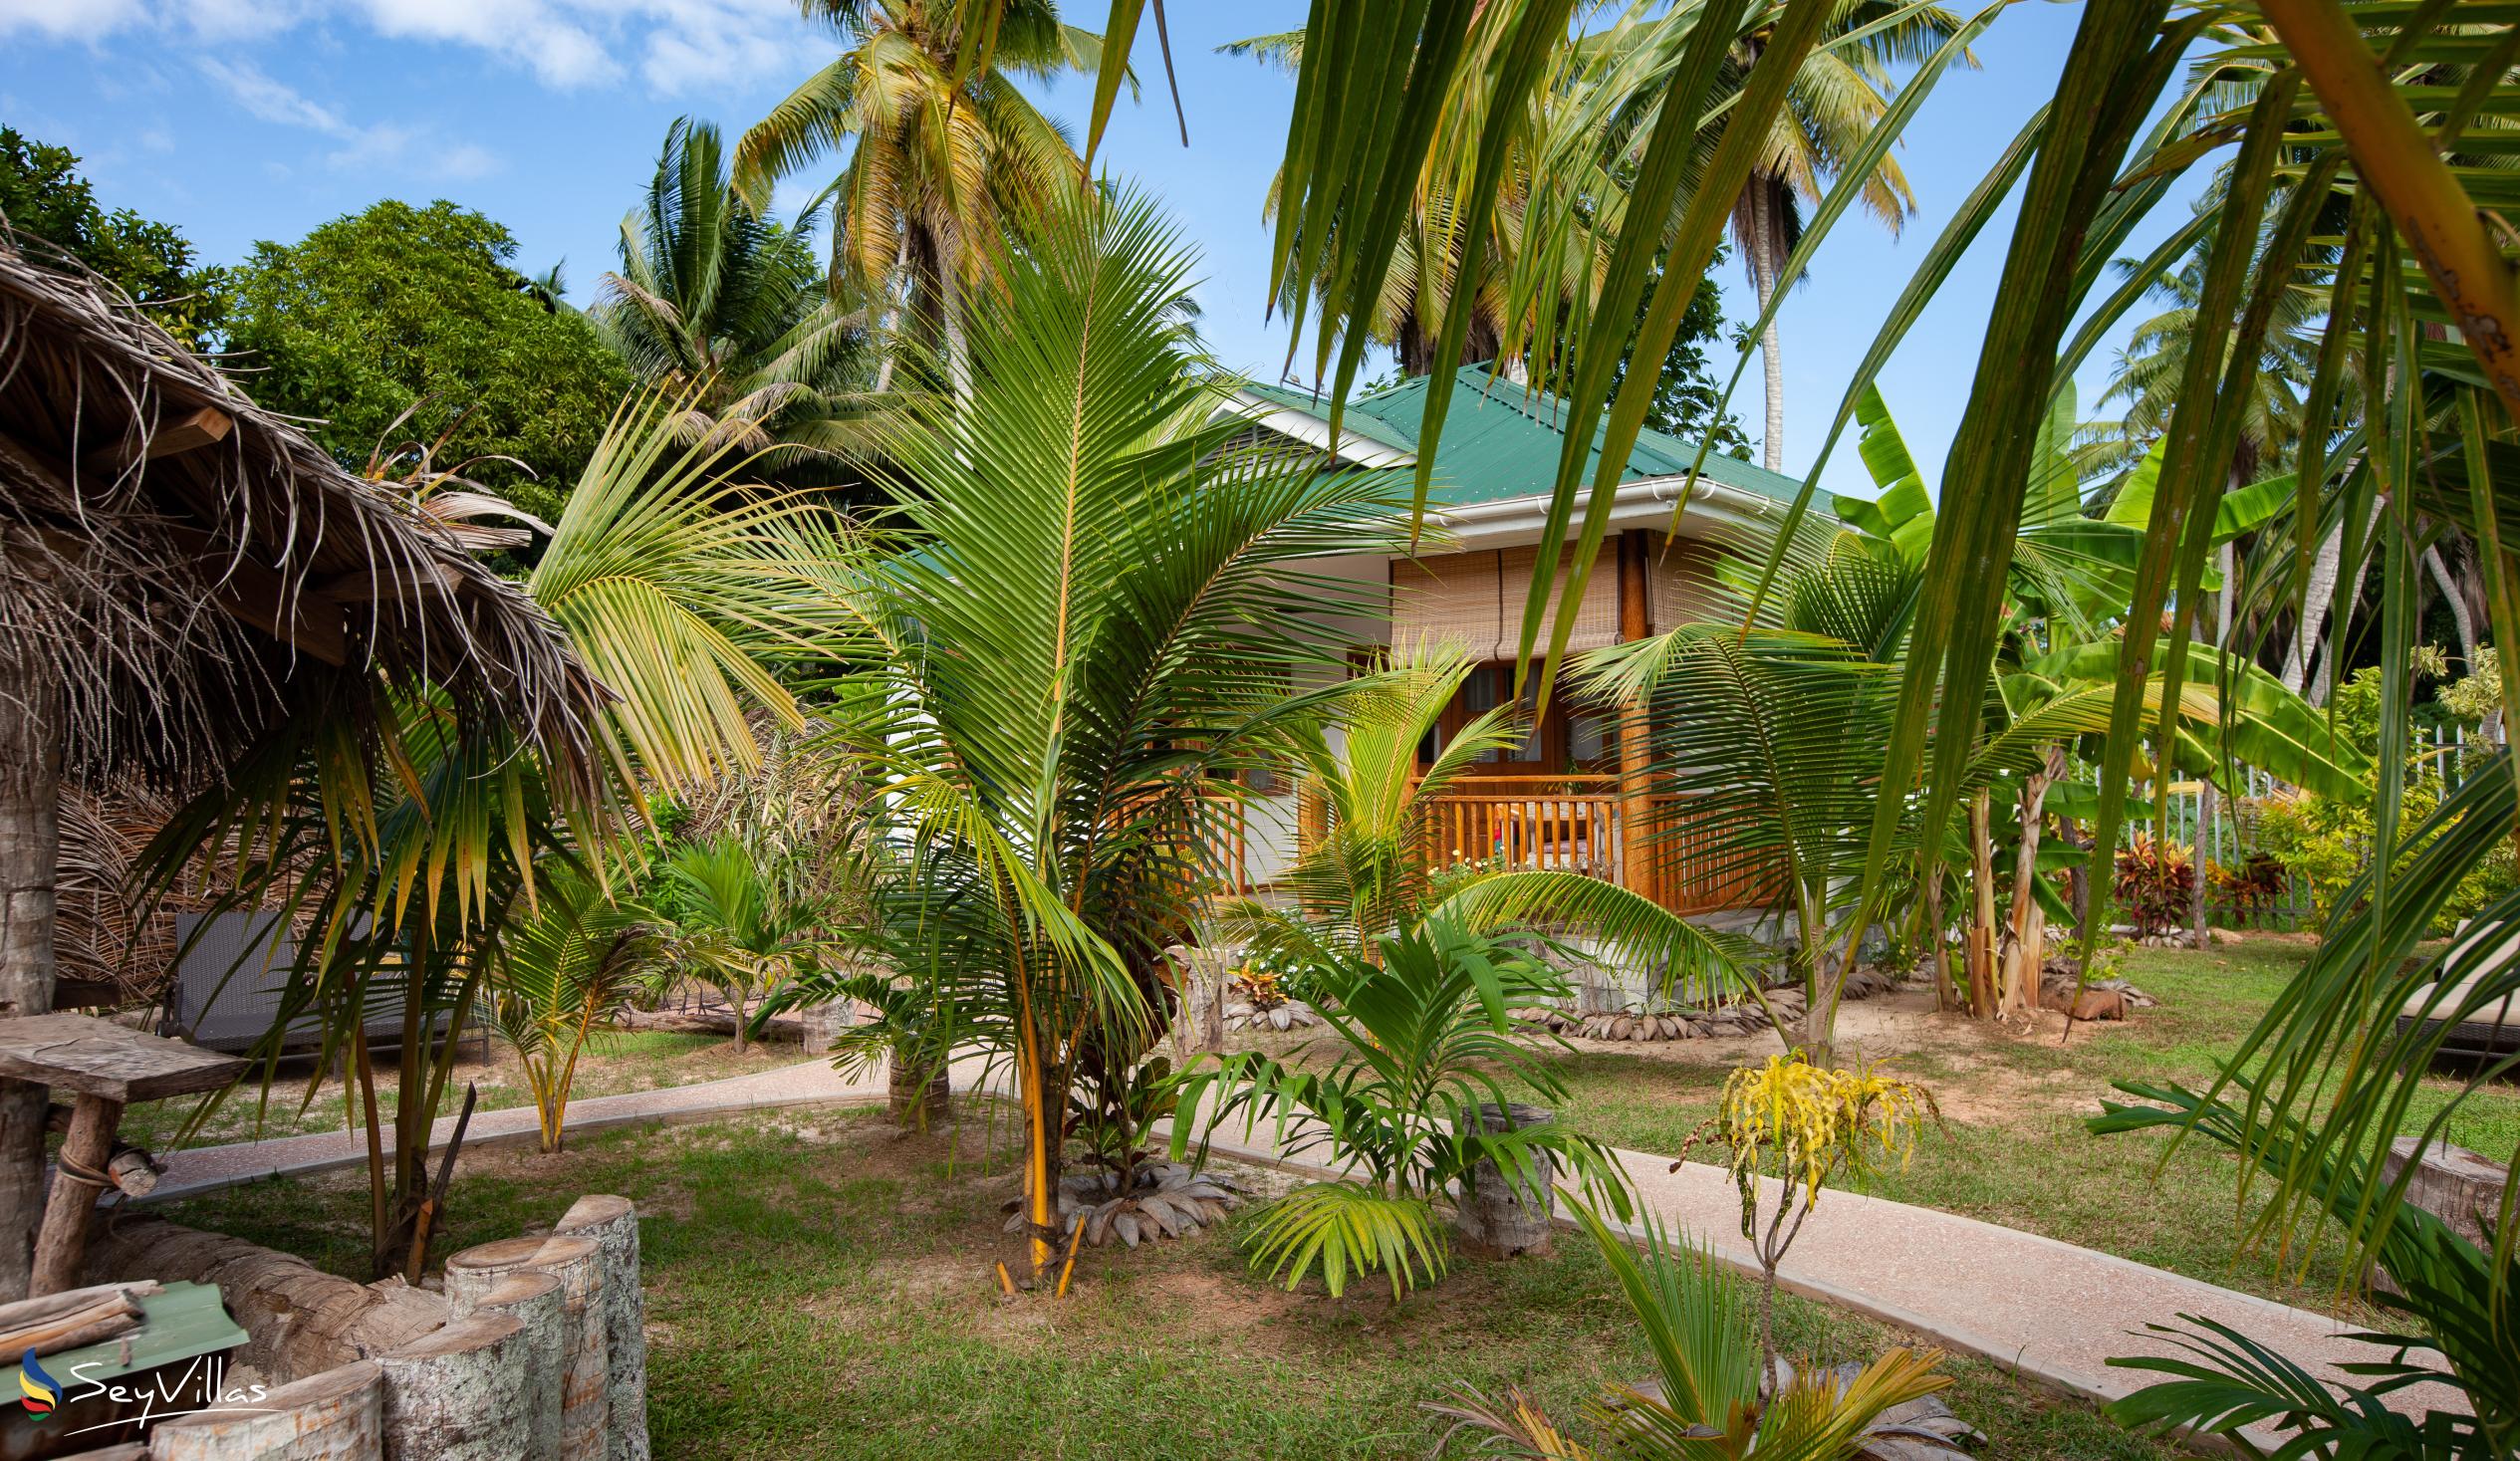 Photo 18: Coco de Mahi - Outdoor area - La Digue (Seychelles)